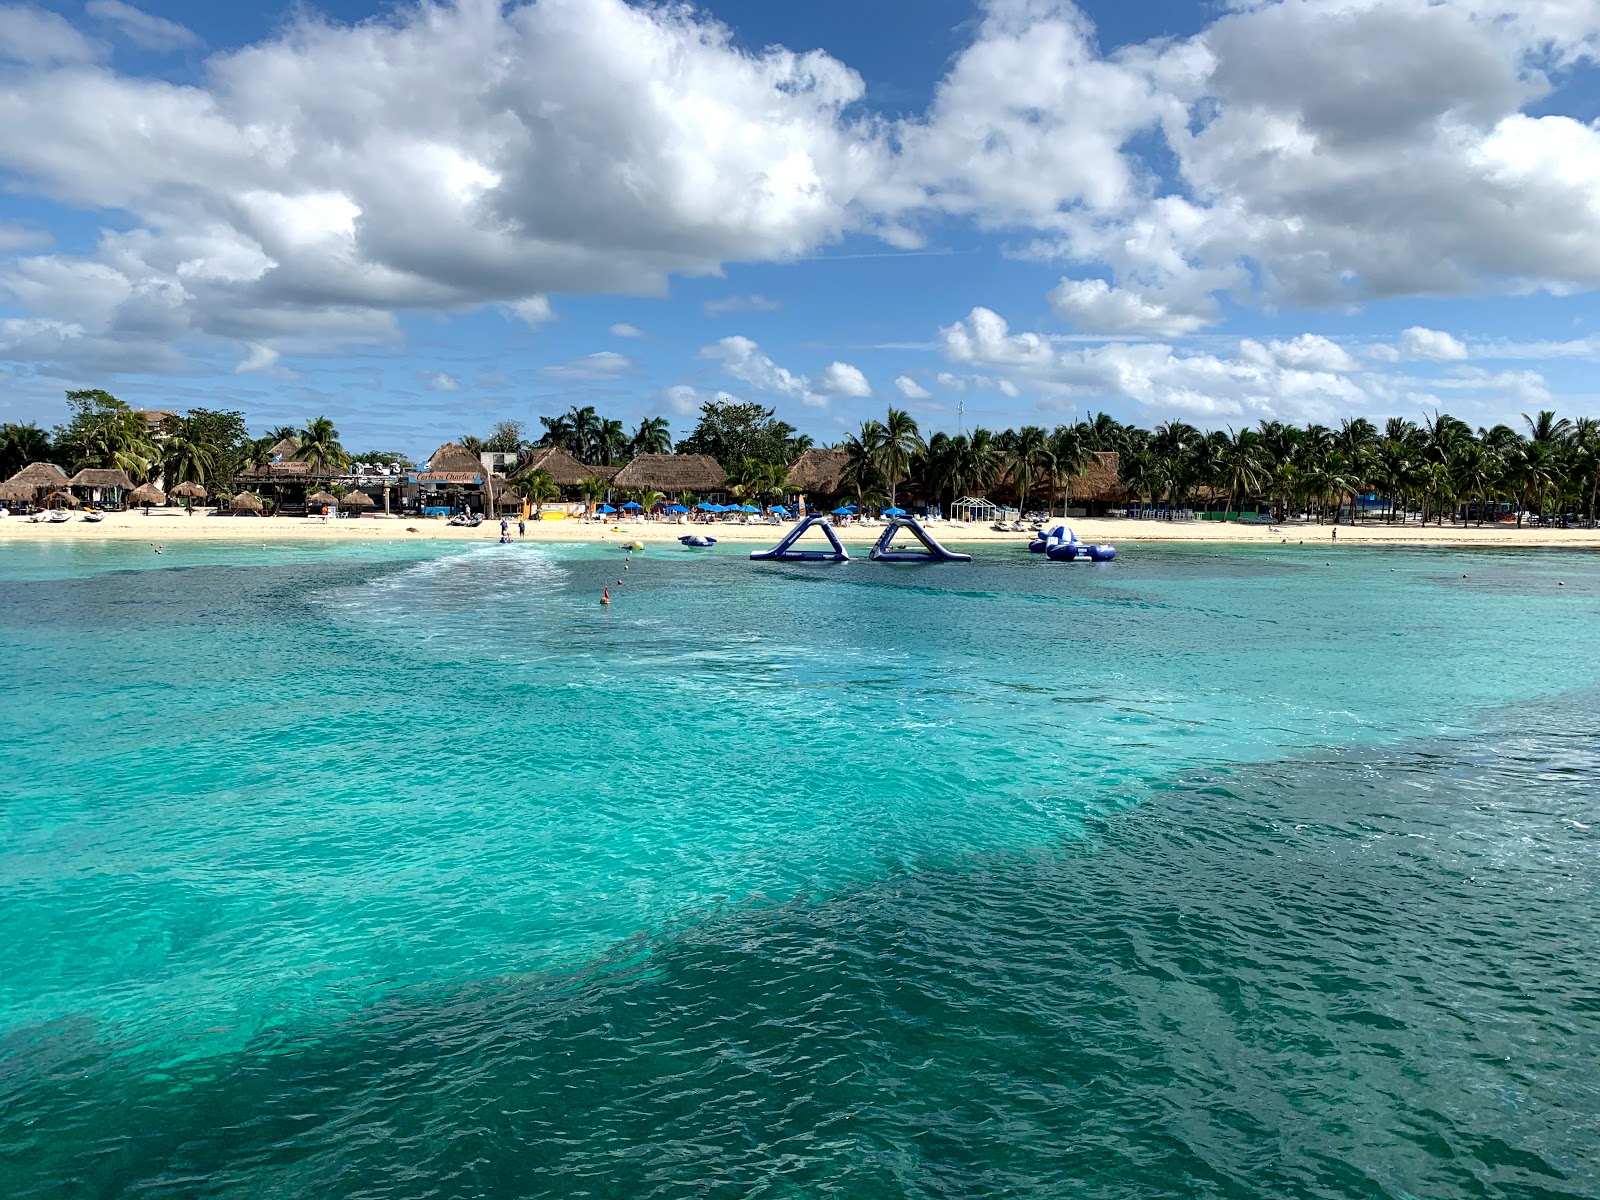 Fotografie cu Playa Mia - locul popular printre cunoscătorii de relaxare